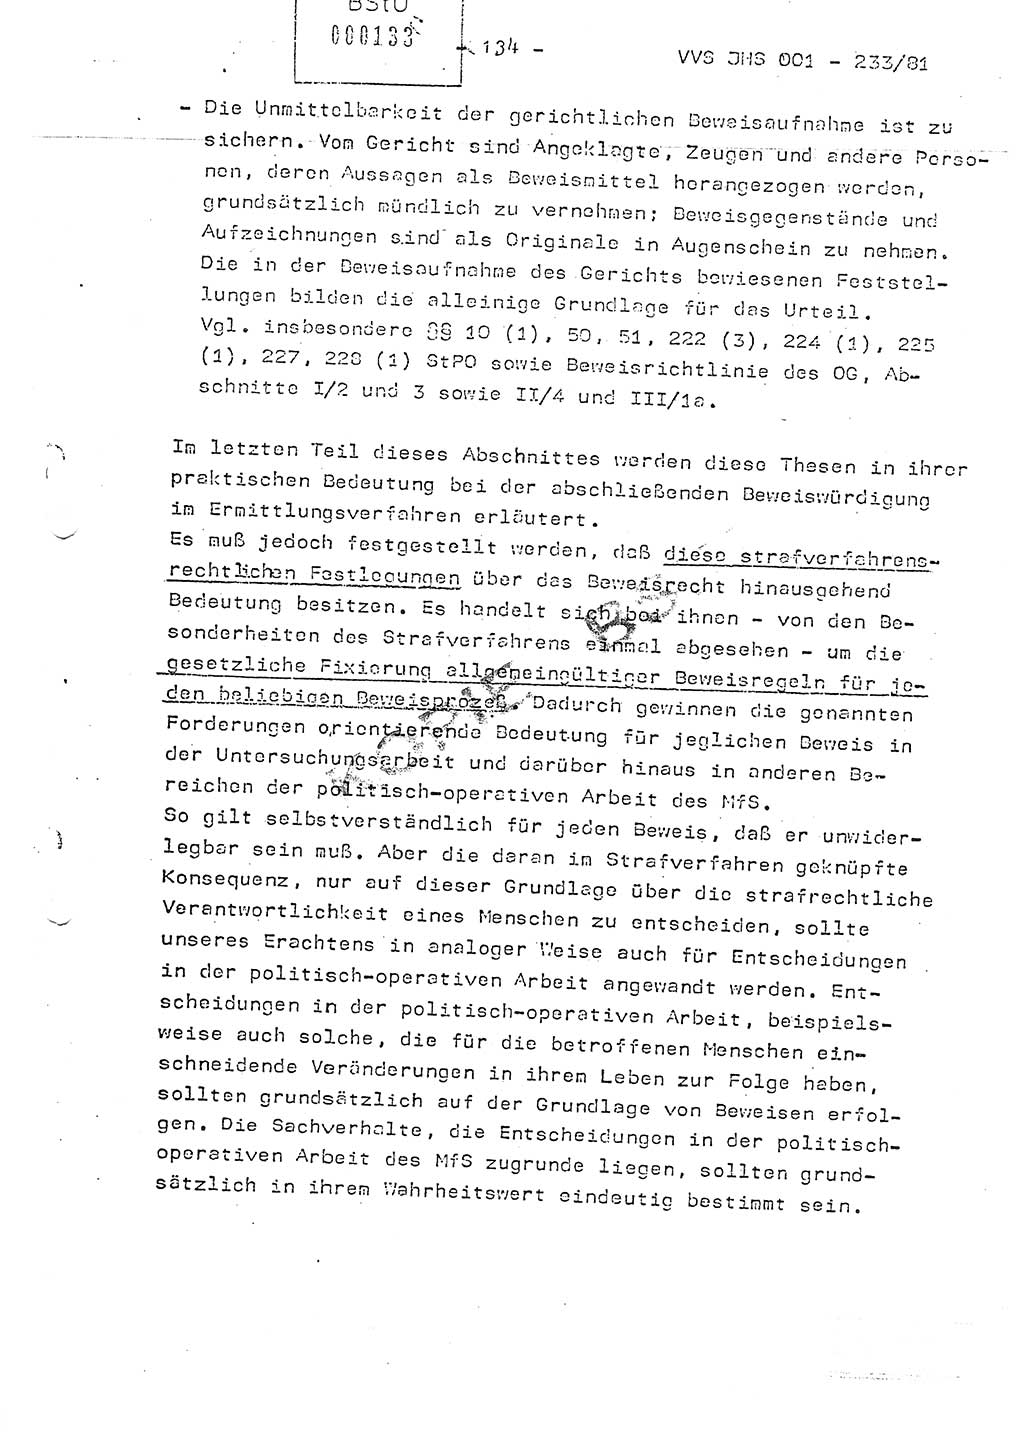 Dissertation Oberstleutnant Horst Zank (JHS), Oberstleutnant Dr. Karl-Heinz Knoblauch (JHS), Oberstleutnant Gustav-Adolf Kowalewski (HA Ⅸ), Oberstleutnant Wolfgang Plötner (HA Ⅸ), Ministerium für Staatssicherheit (MfS) [Deutsche Demokratische Republik (DDR)], Juristische Hochschule (JHS), Vertrauliche Verschlußsache (VVS) o001-233/81, Potsdam 1981, Blatt 134 (Diss. MfS DDR JHS VVS o001-233/81 1981, Bl. 134)